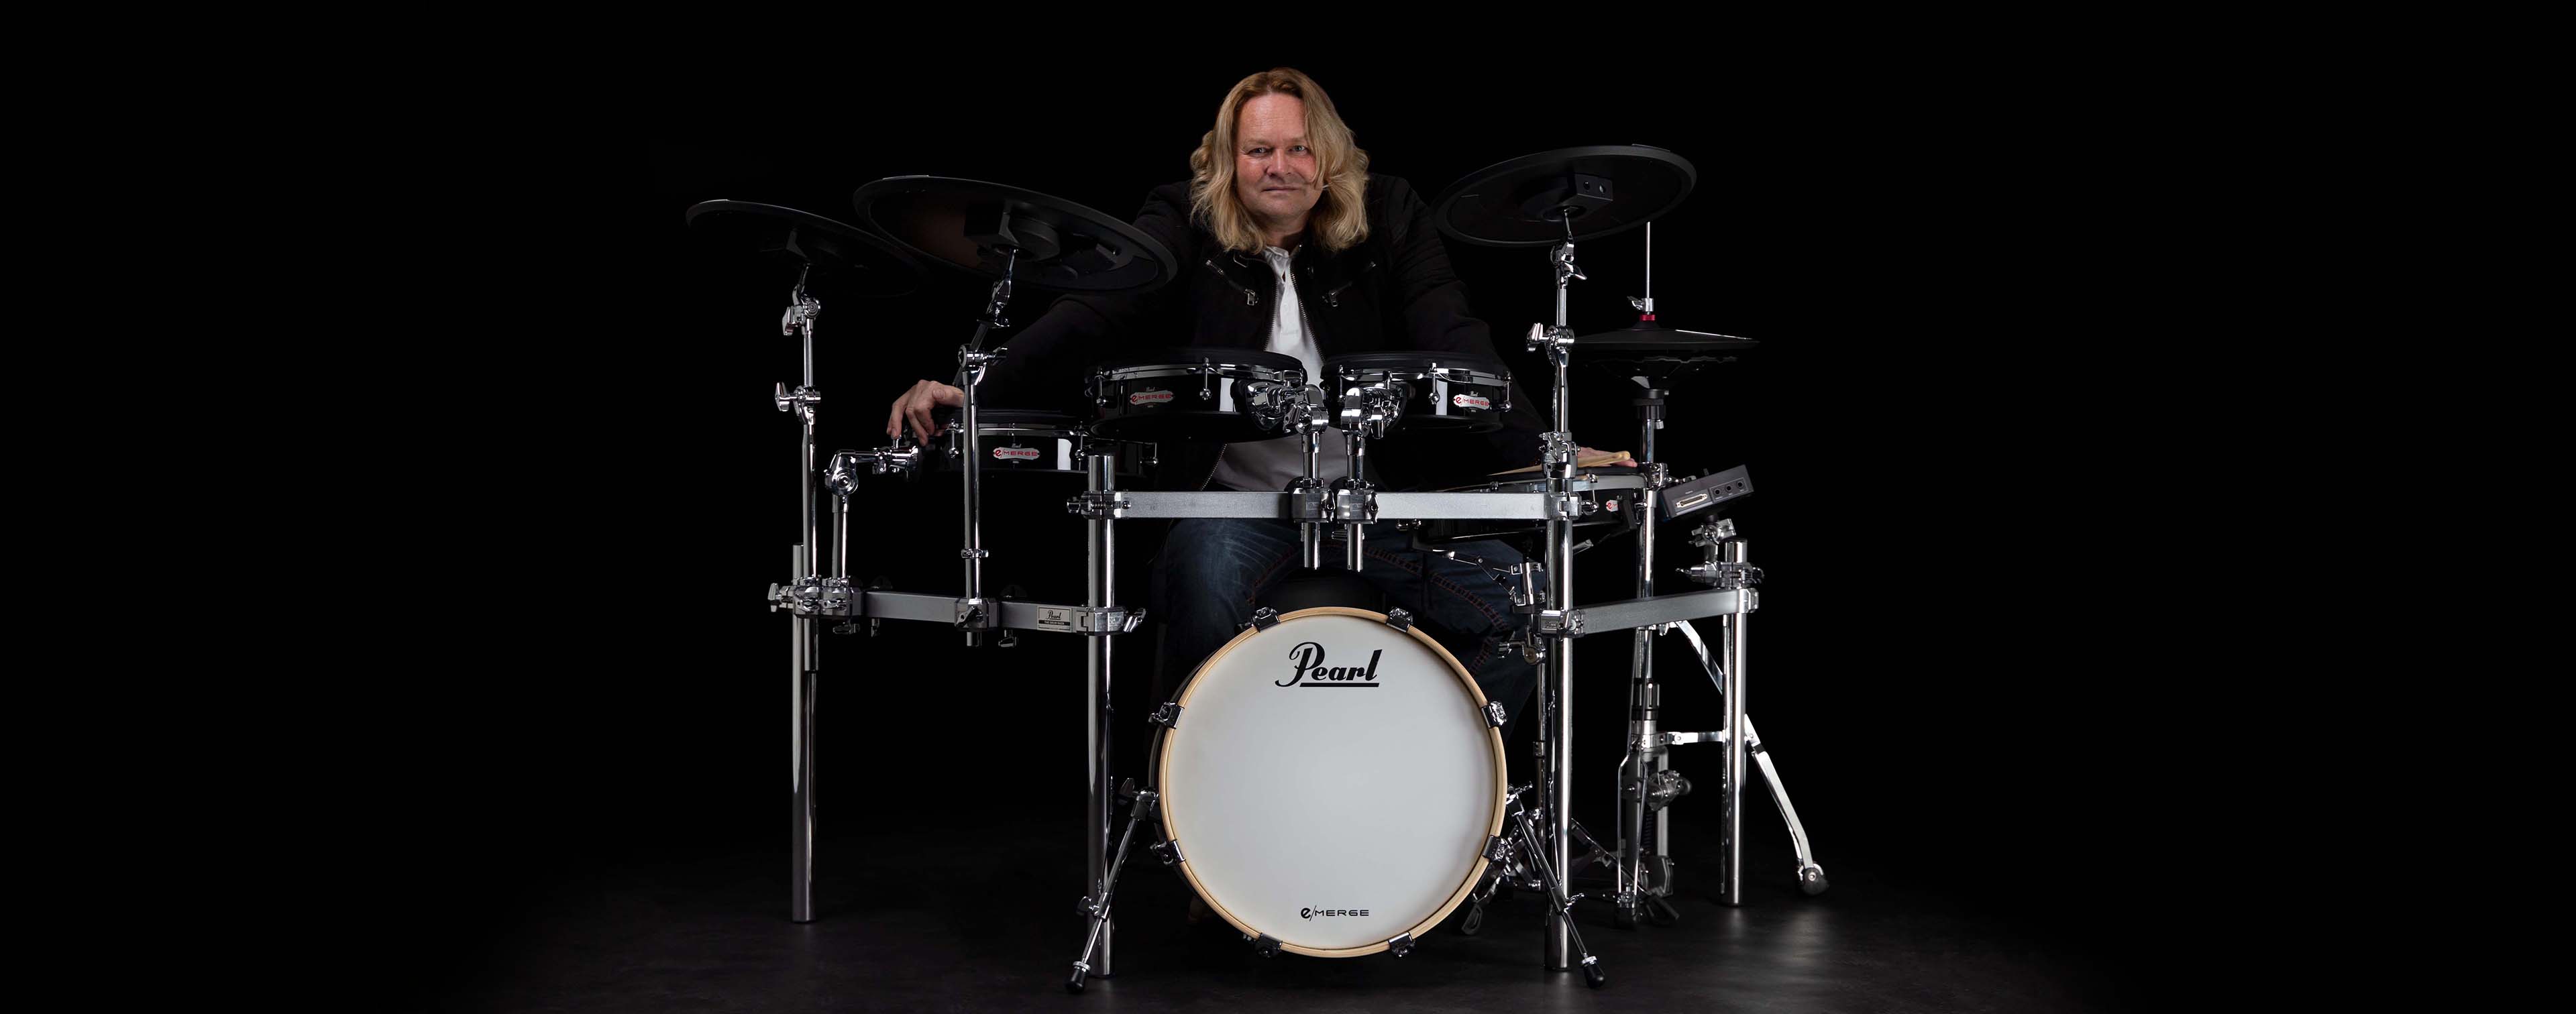 Dirk Brand | パール楽器【公式サイト】Pearl Drums